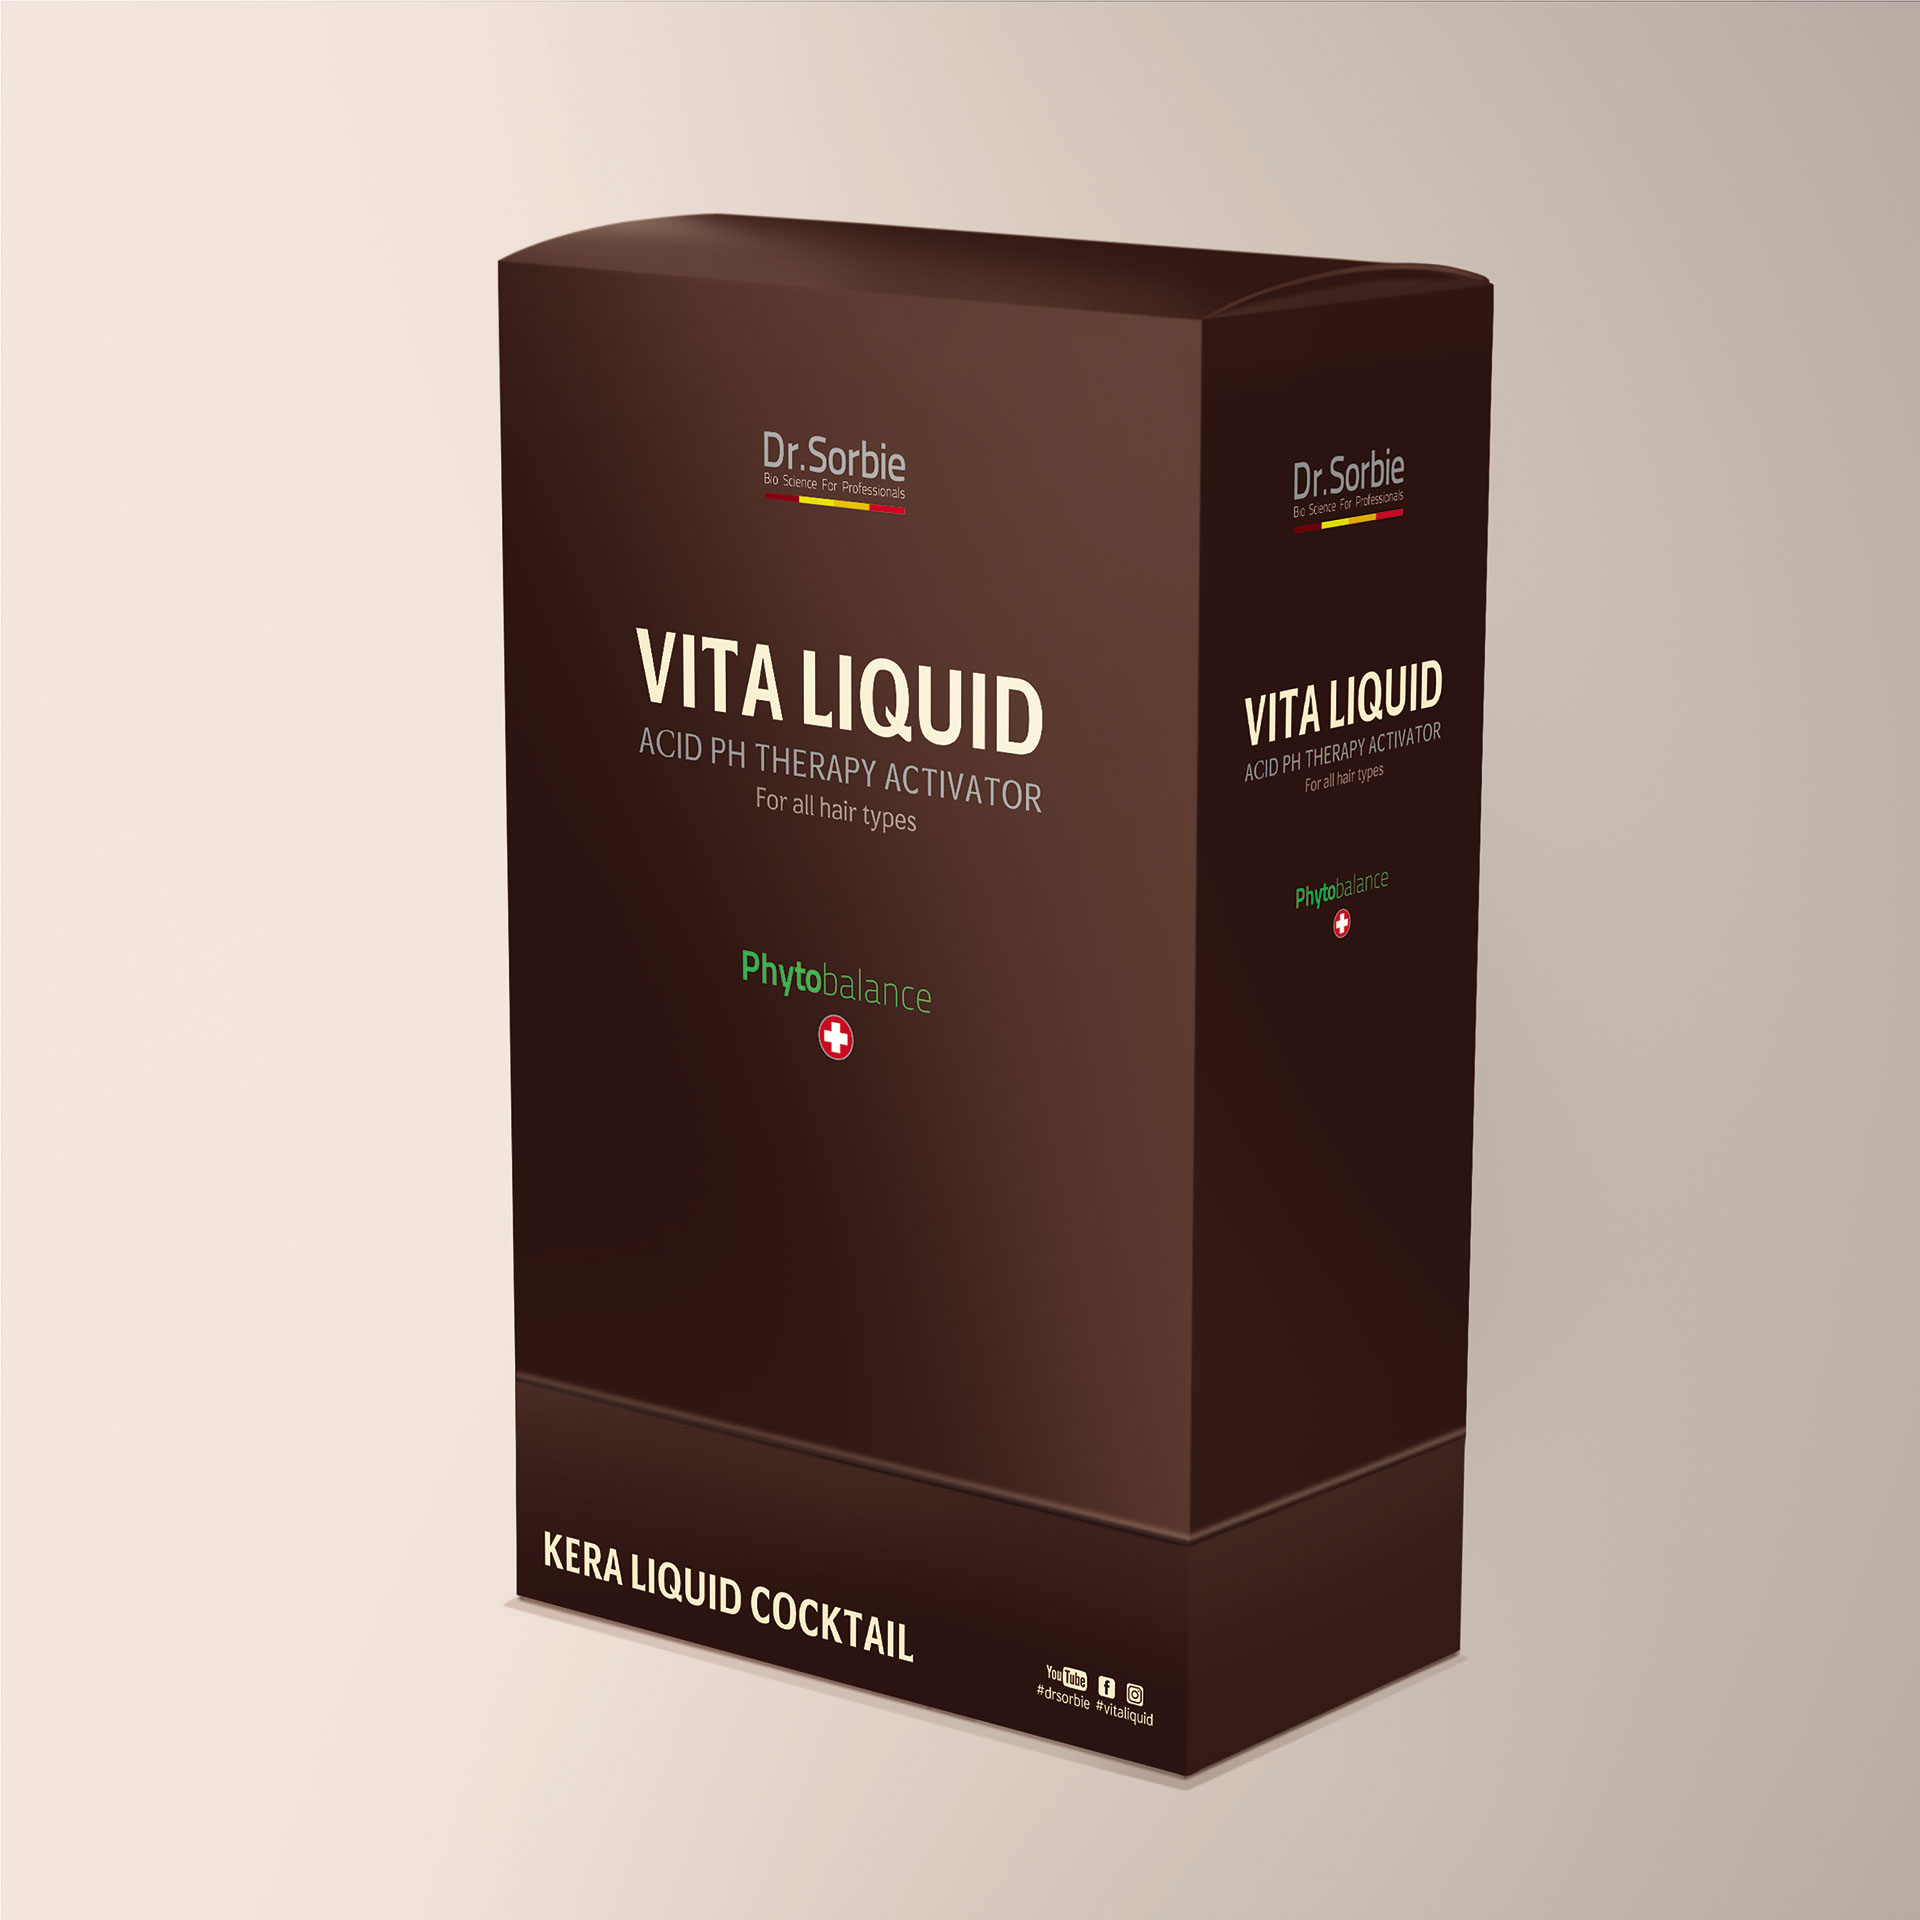 Vita Liquid Kuvsa by Dr. sorbie